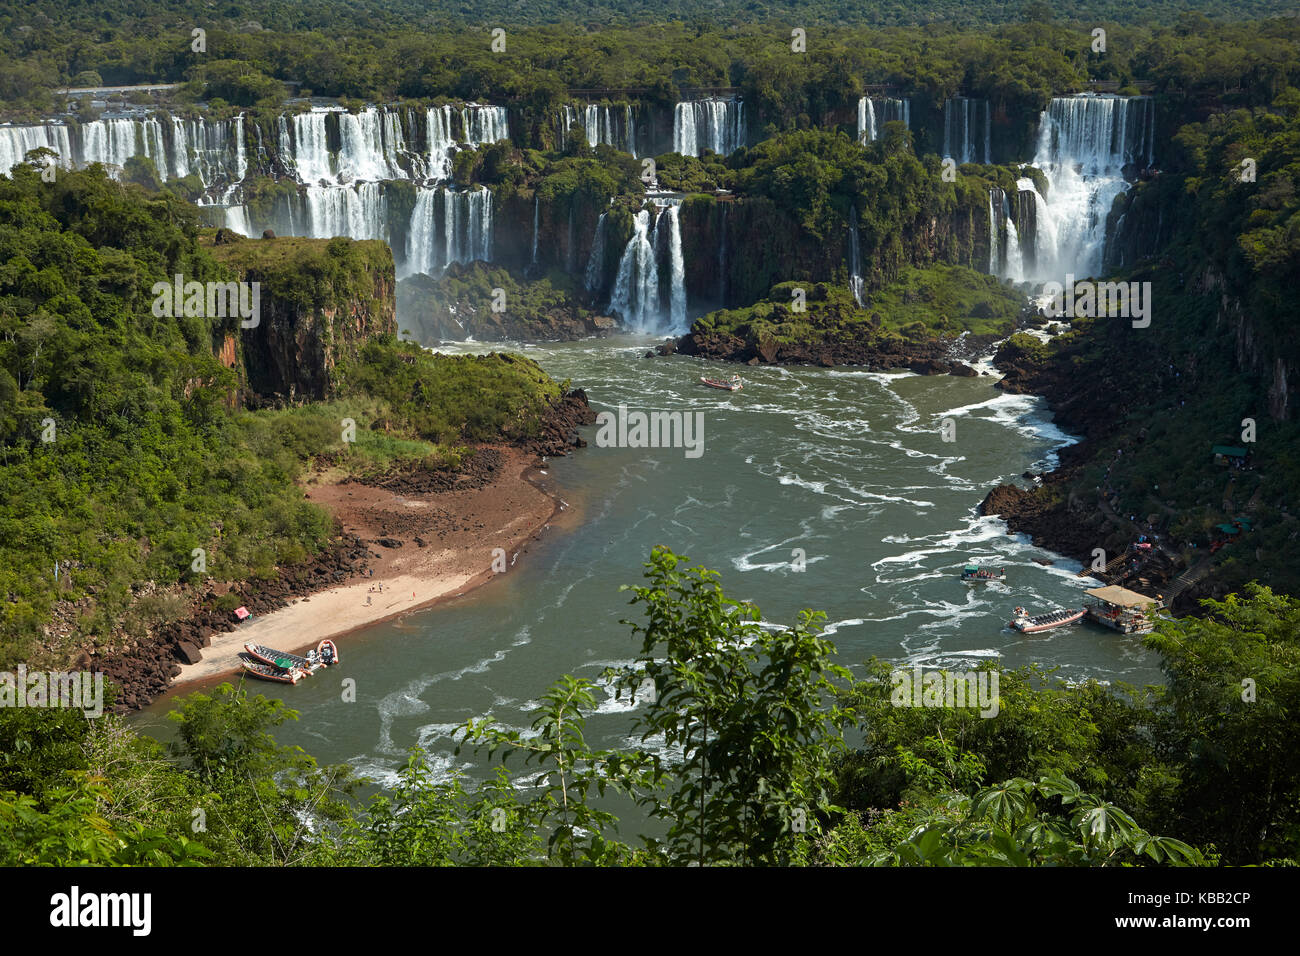 Cascate di Iguazu sul lato argentino, e barche turistiche sul fiume Iguazu, Brasile - confine con l'Argentina, Sud America Foto Stock